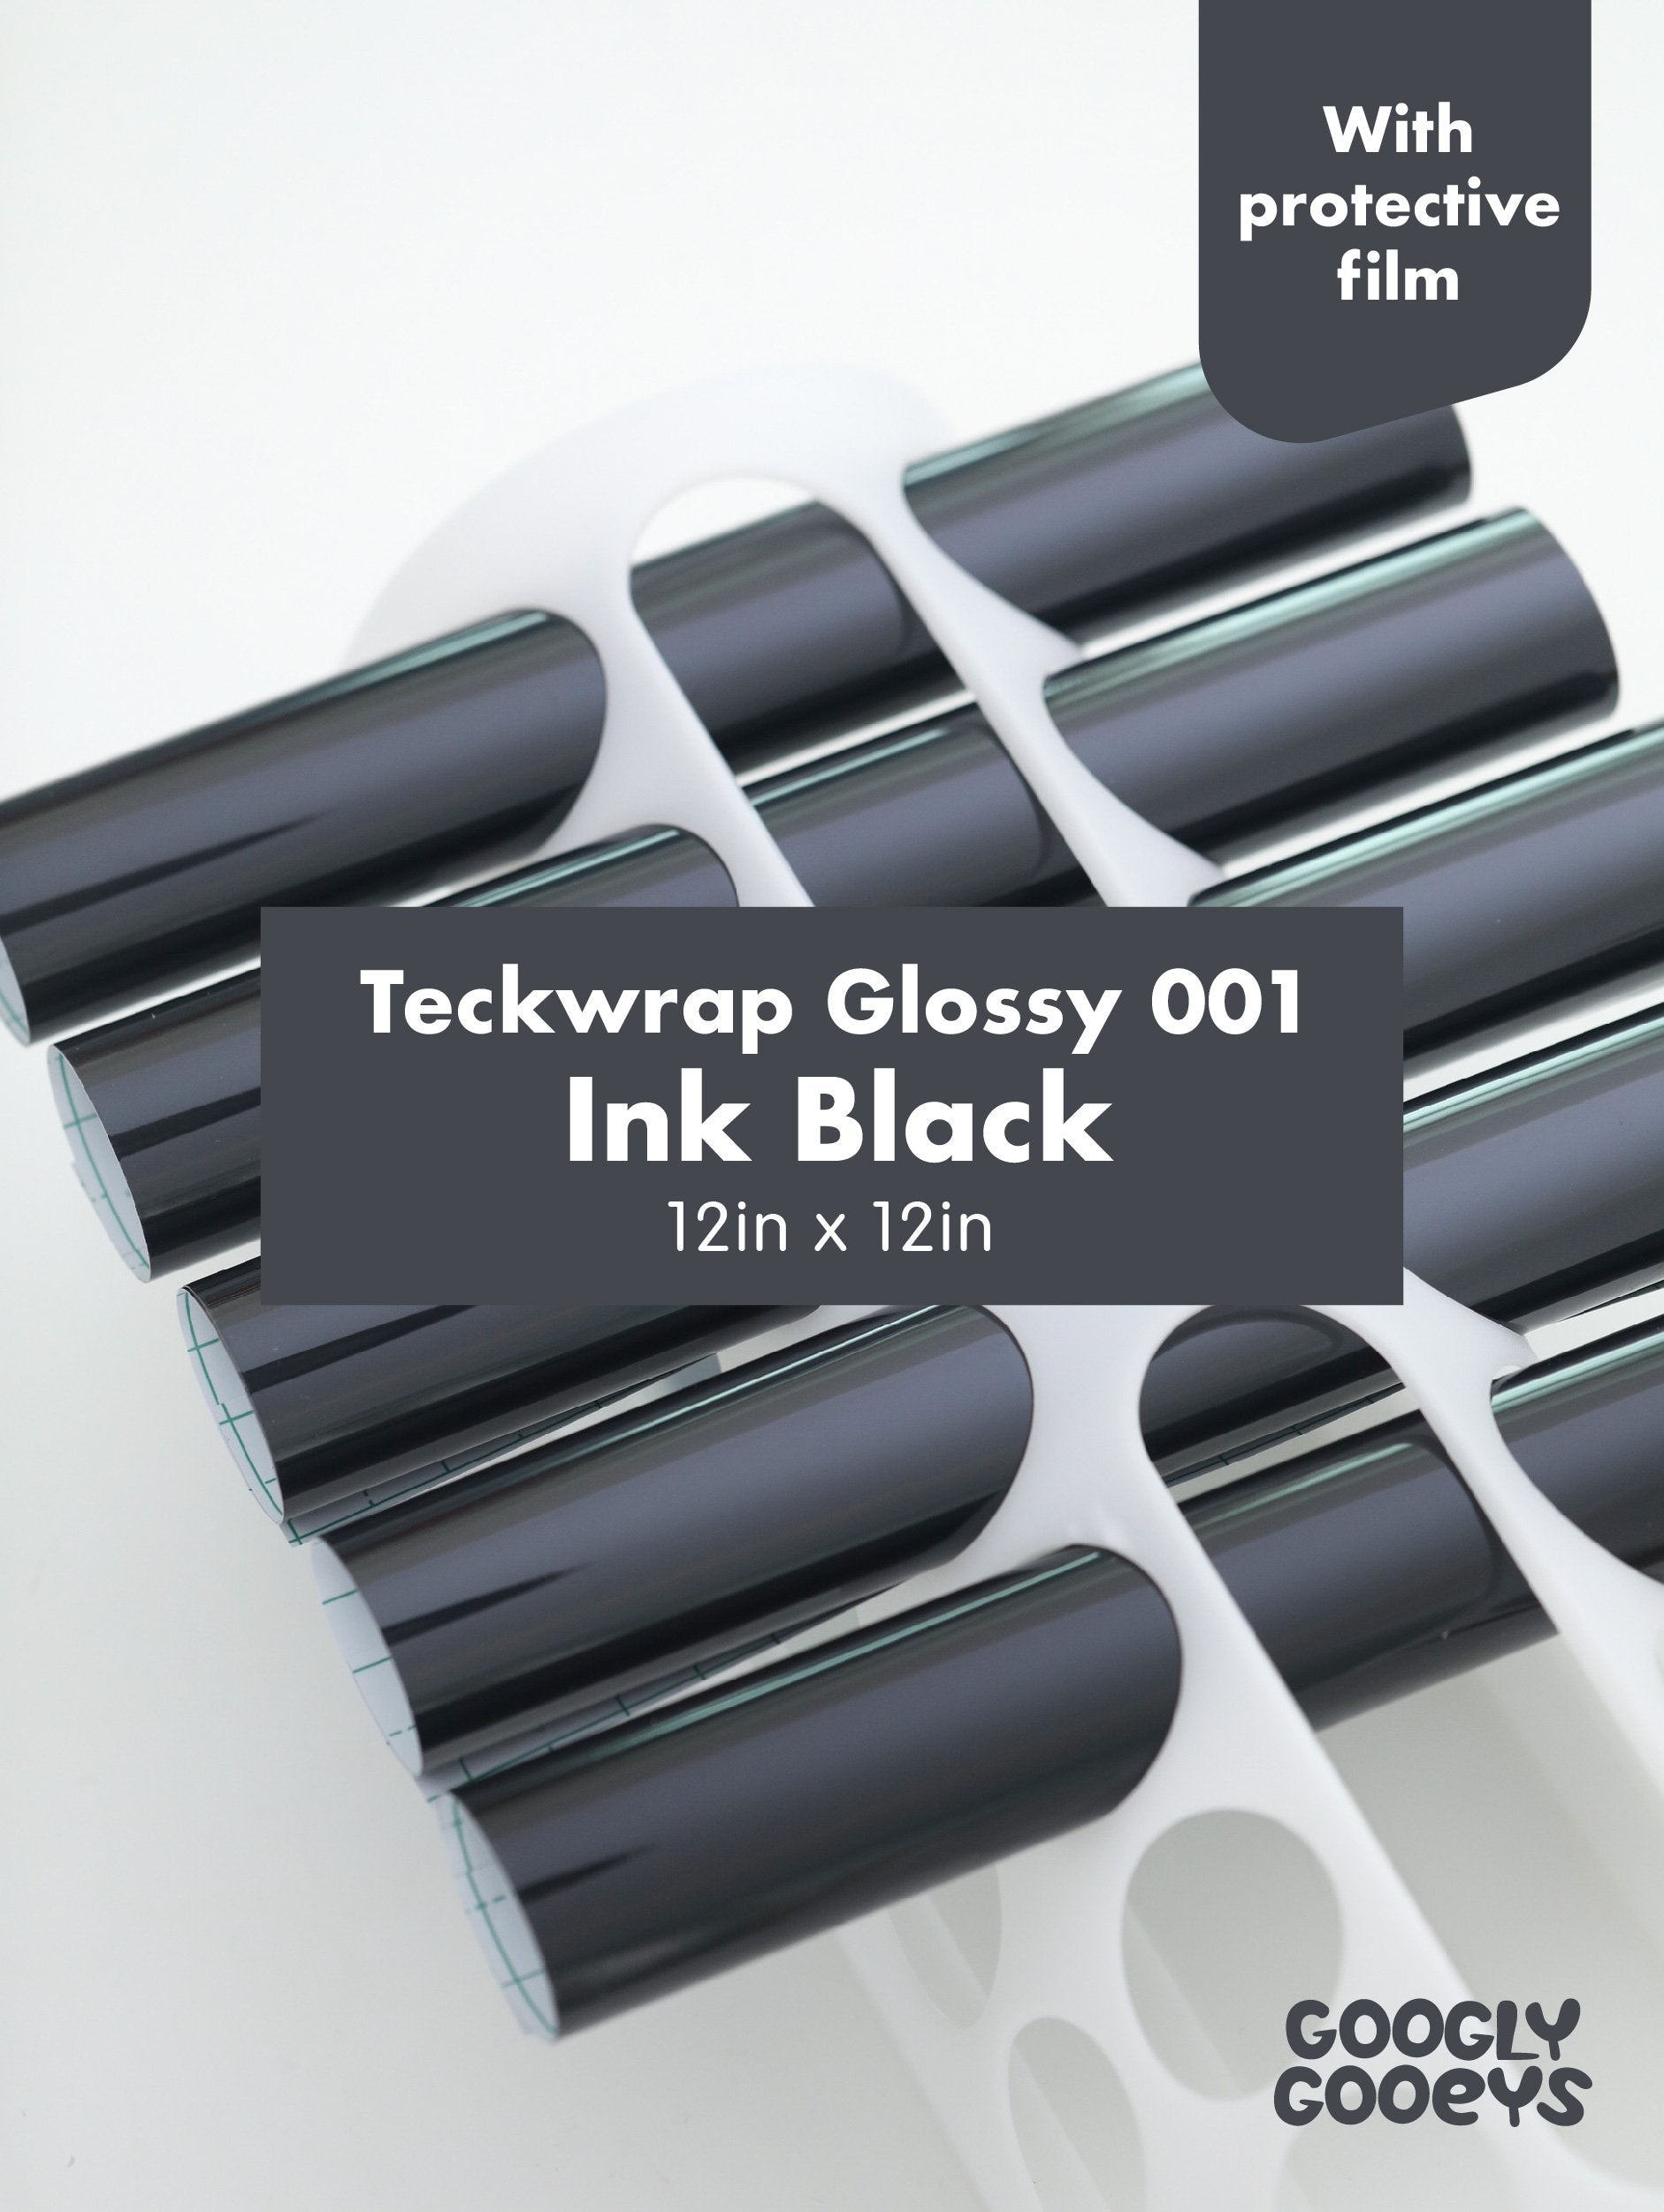 Teckwrap 001 Series Glossy Adhesive Vinyl Stickers Ink Black